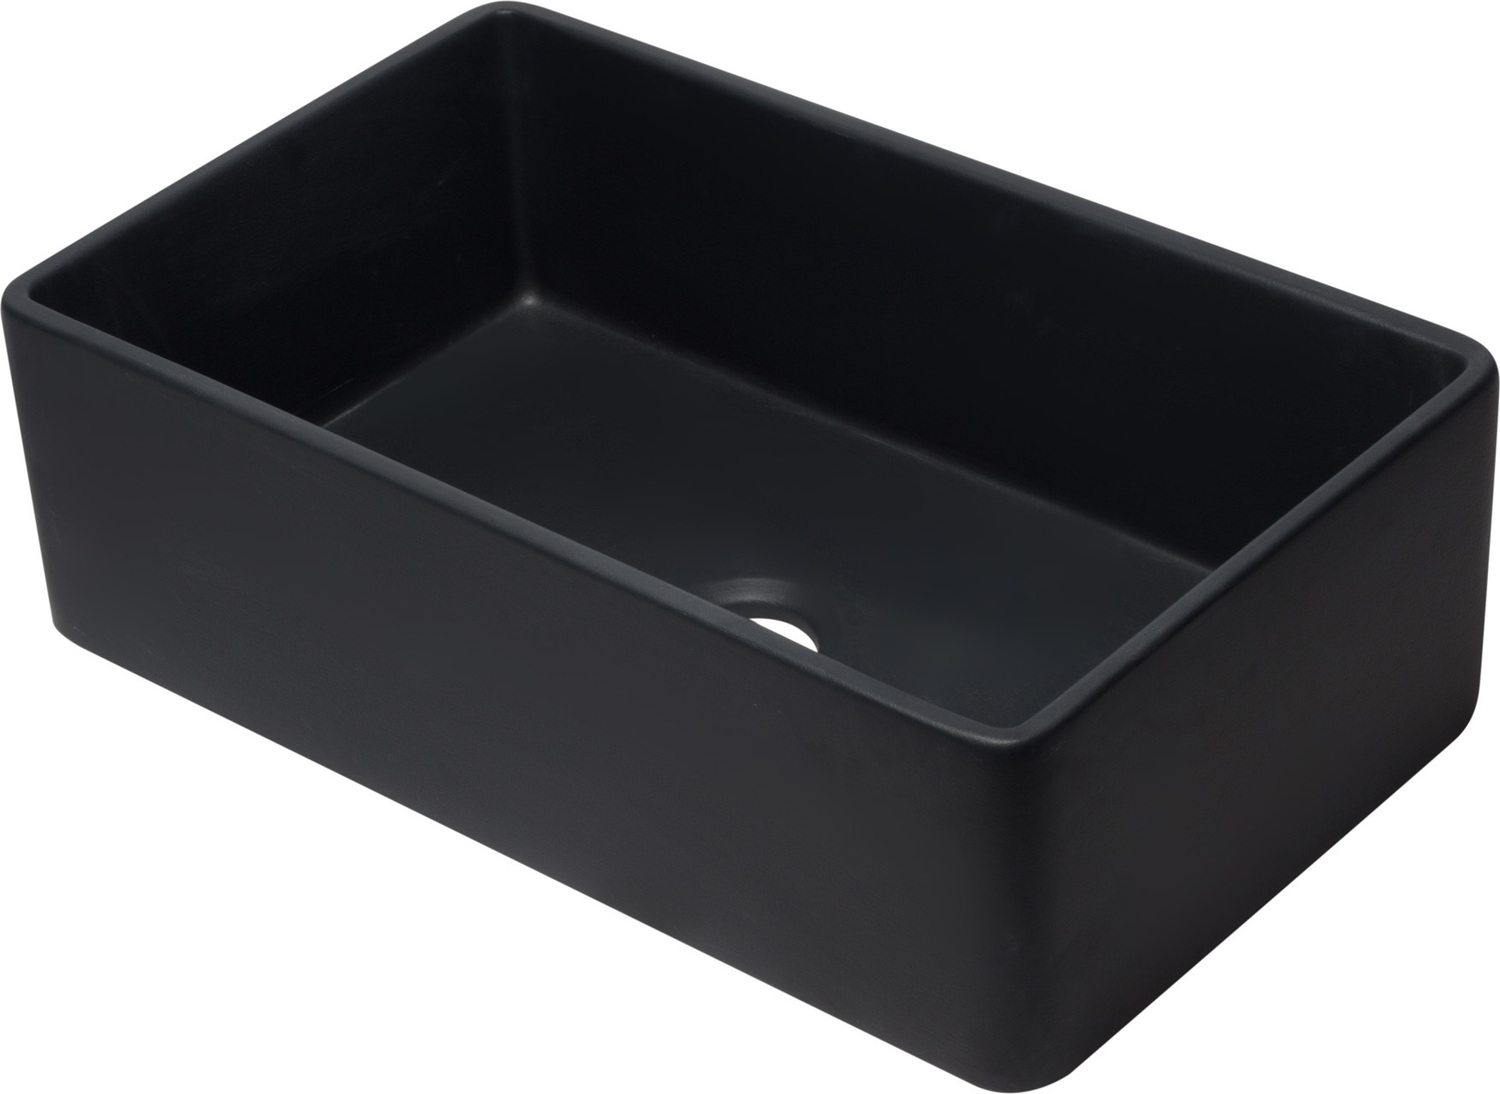 Alfi Kitchen Sink Single Bowl Sinks Black Matte Traditional